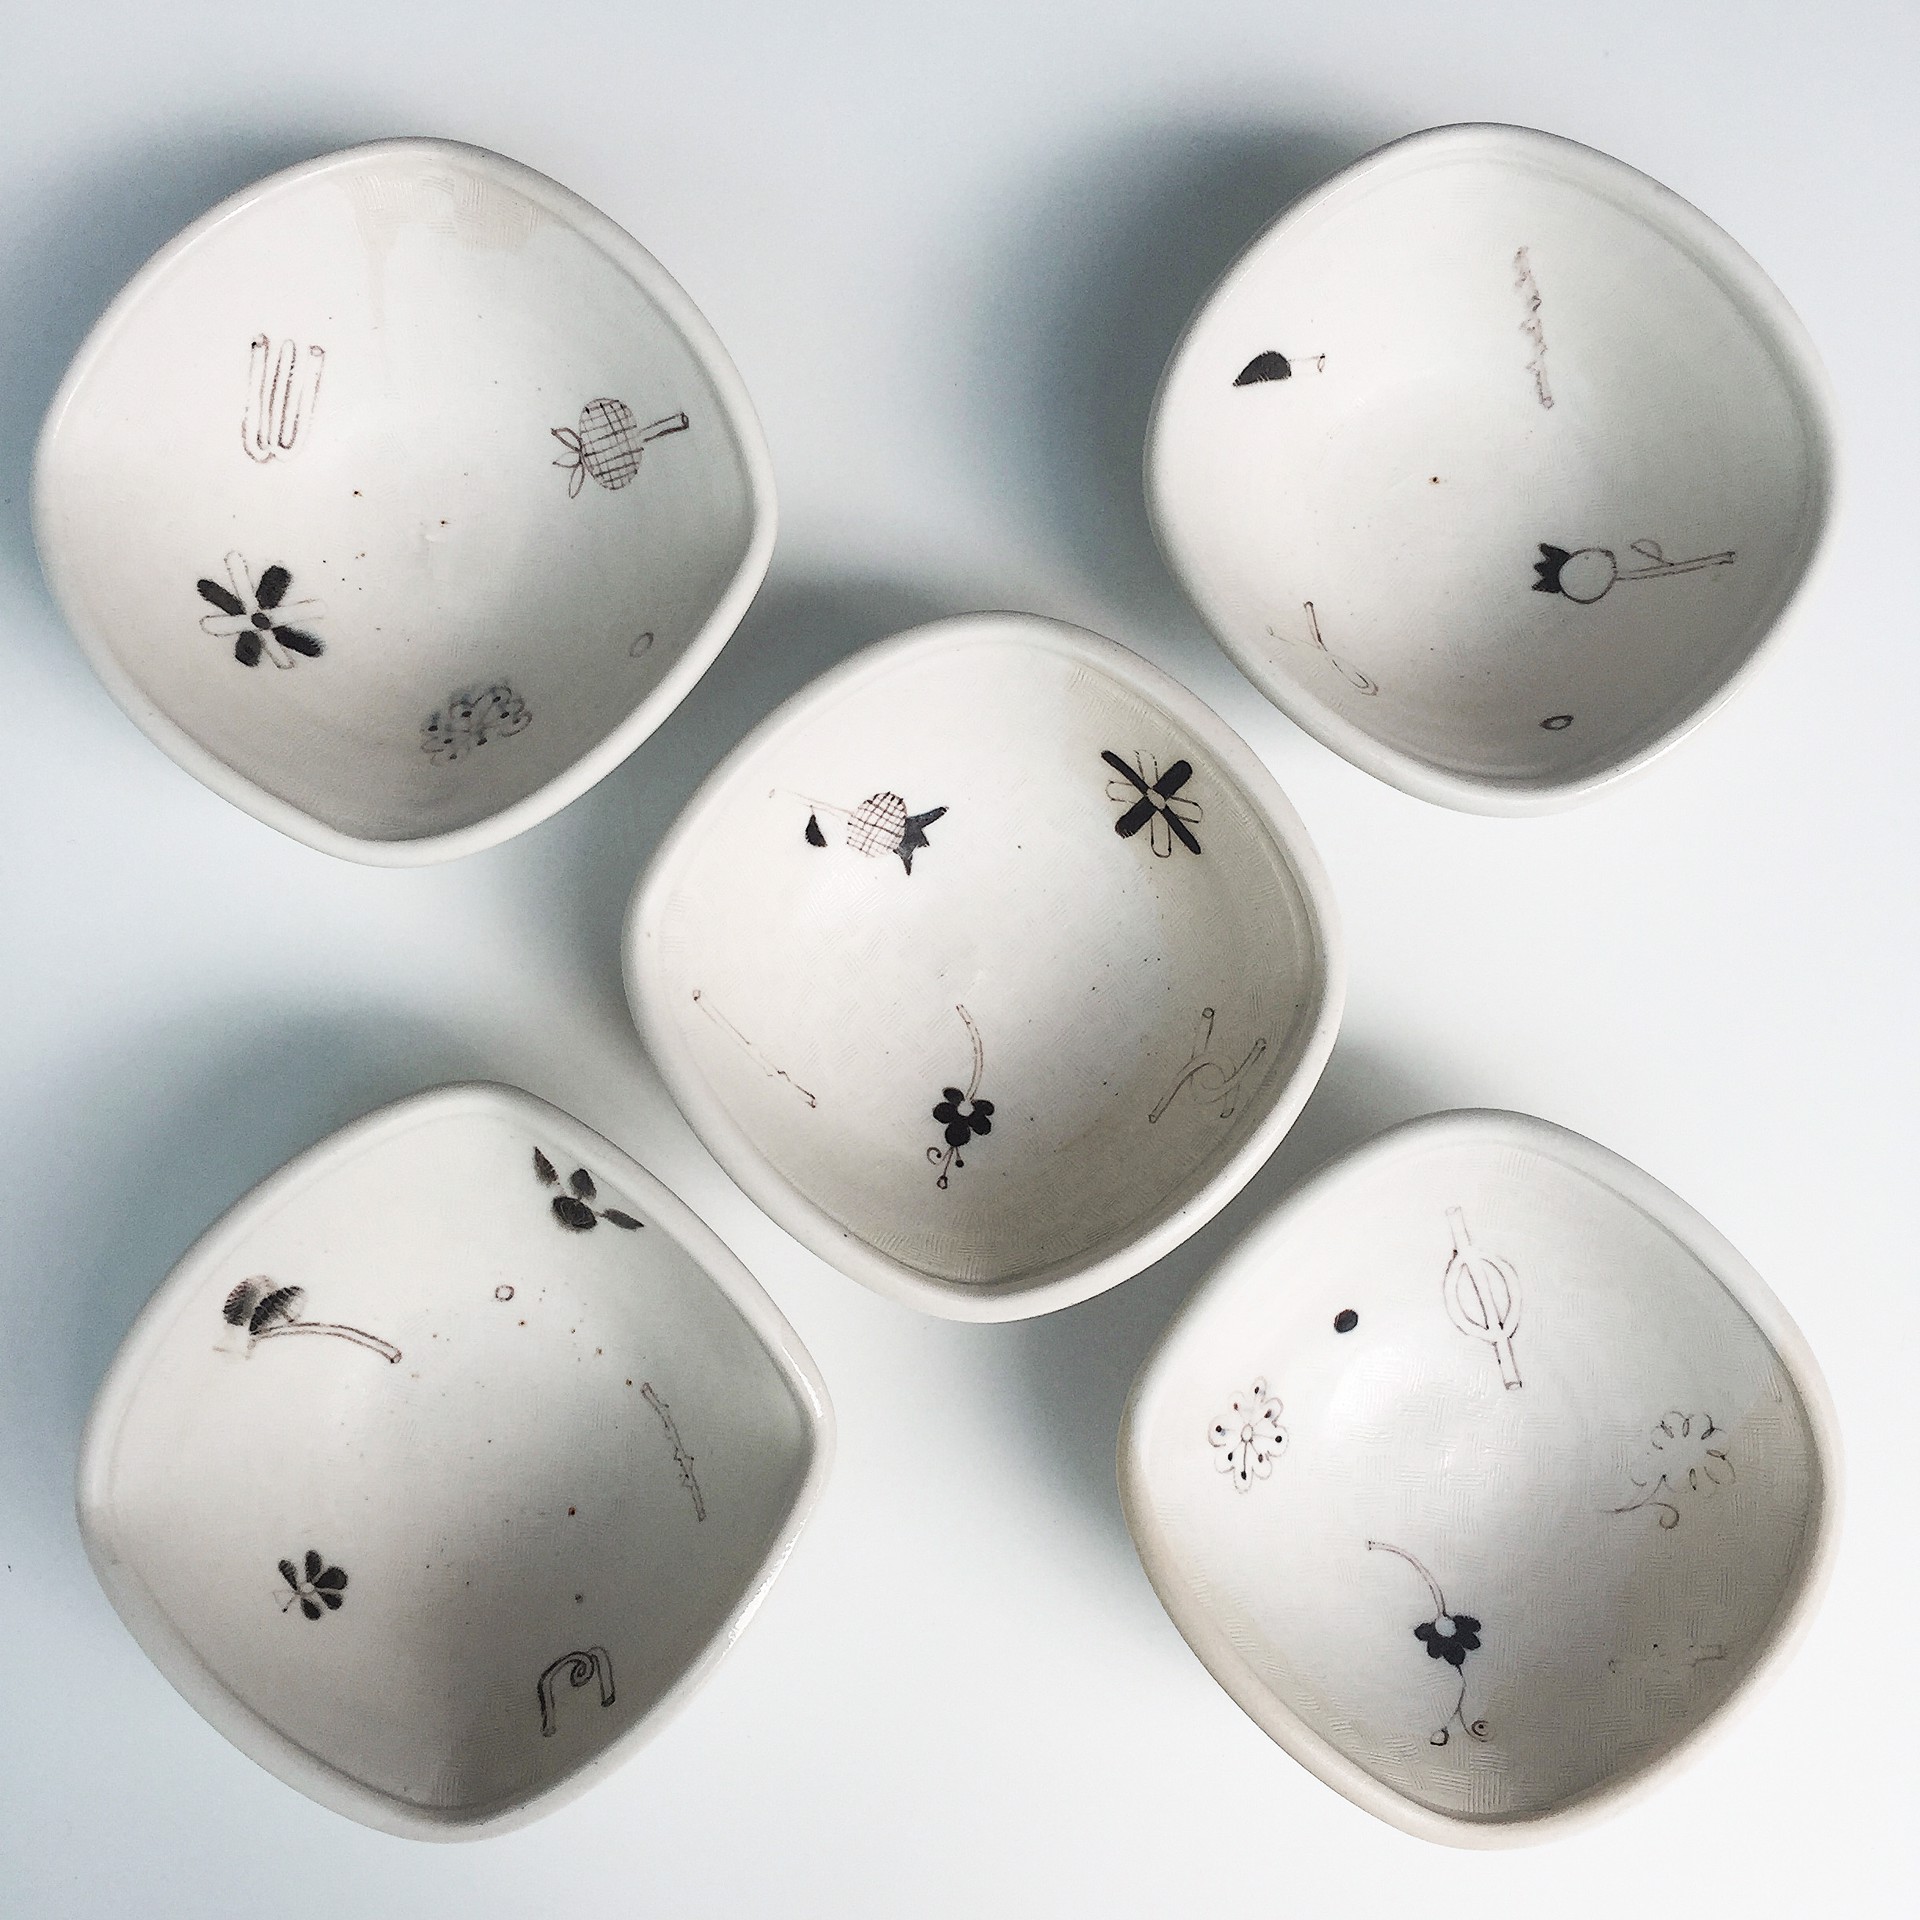 Five Squared Bowls (set #2) by Linda Sikora